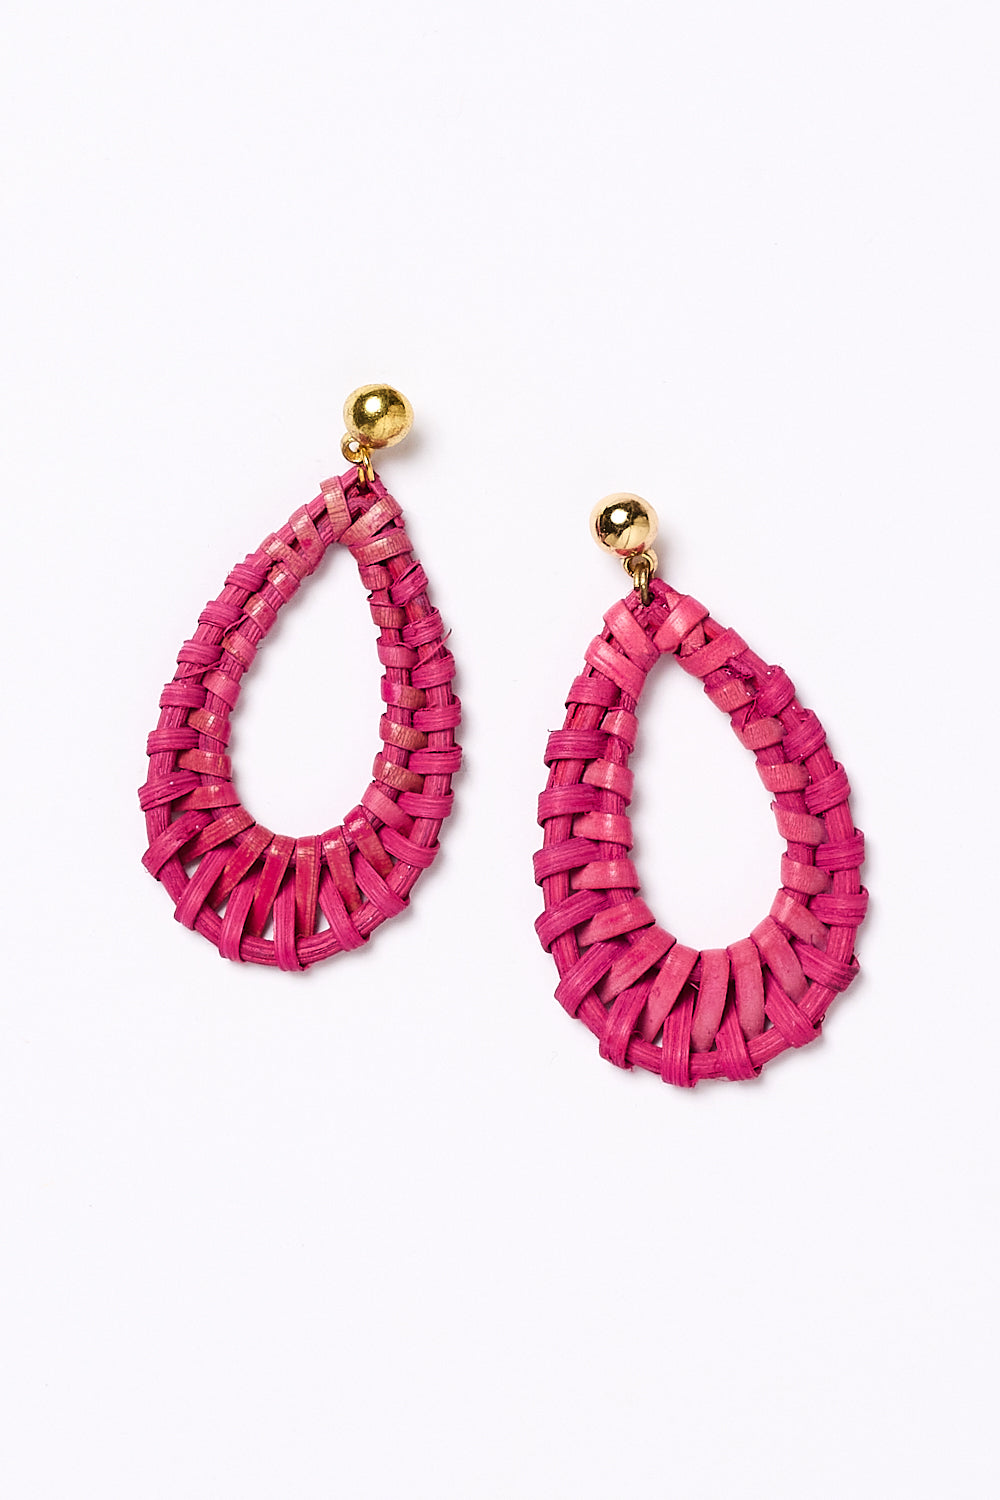 Oval Raffia Earrings in Hot Pink